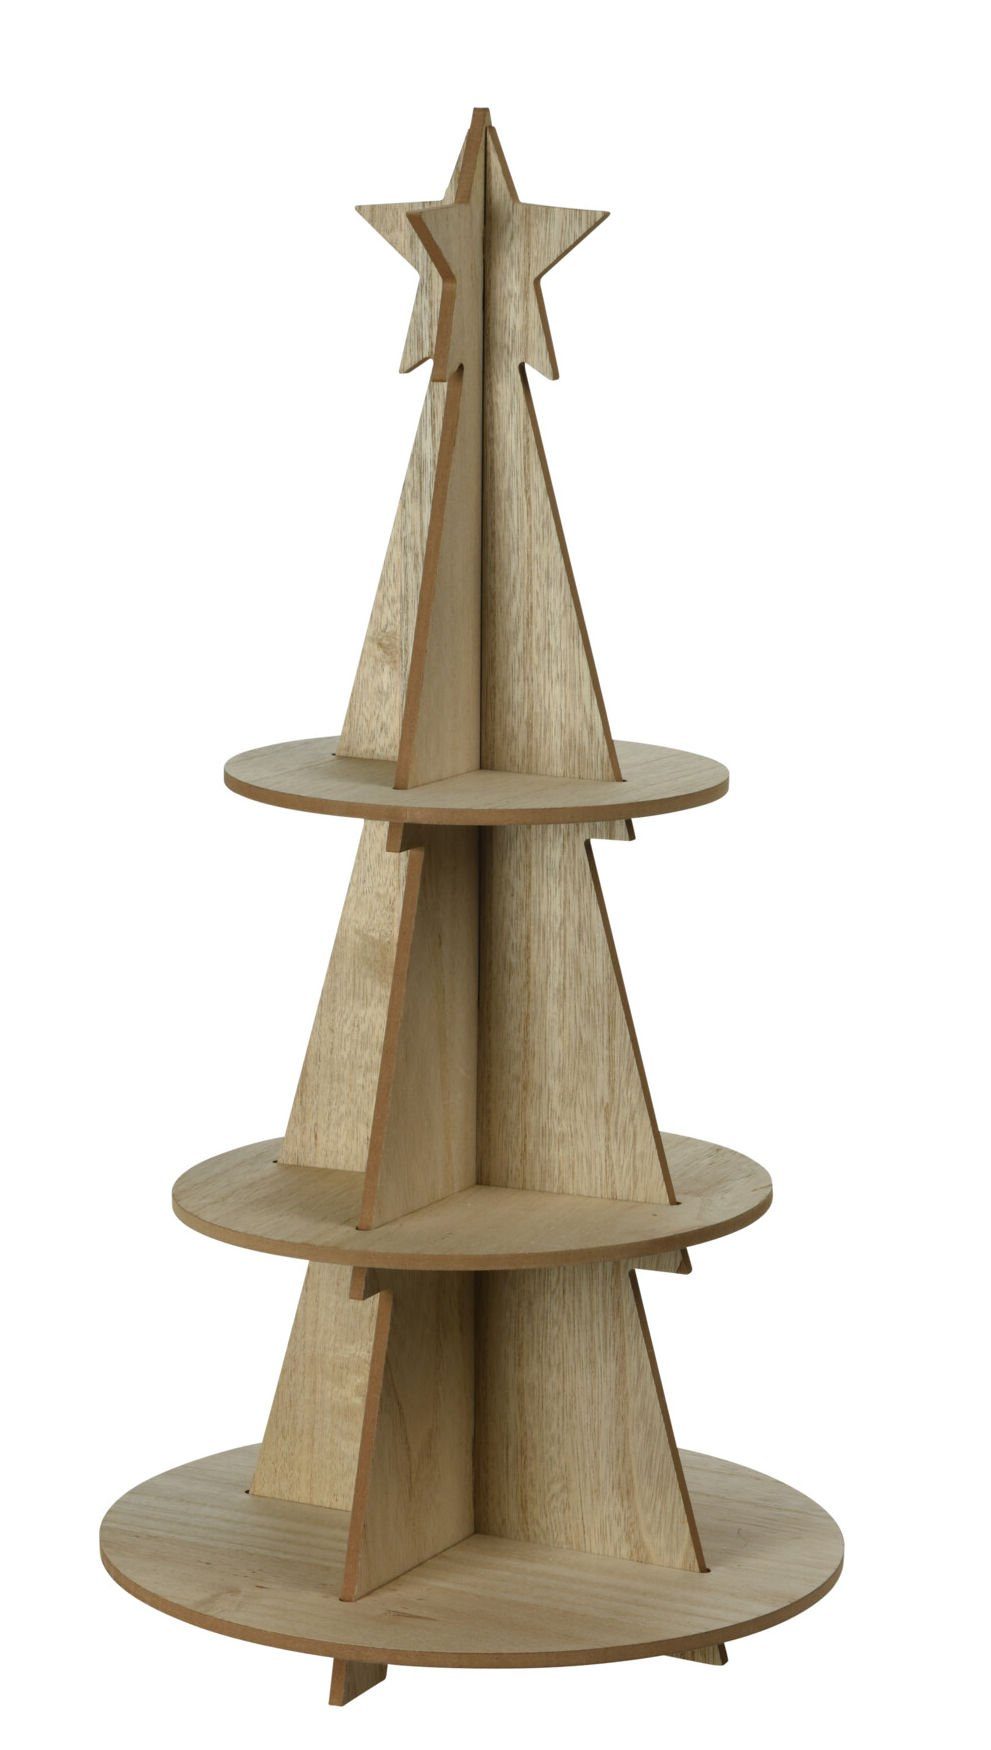 Spetebo Weihnachtspyramide XXL Holz Weihnachtsbaum Pyramide 60cm mit 3 Etagen, Weihnachts Deko Etagere mit Stern Spitze